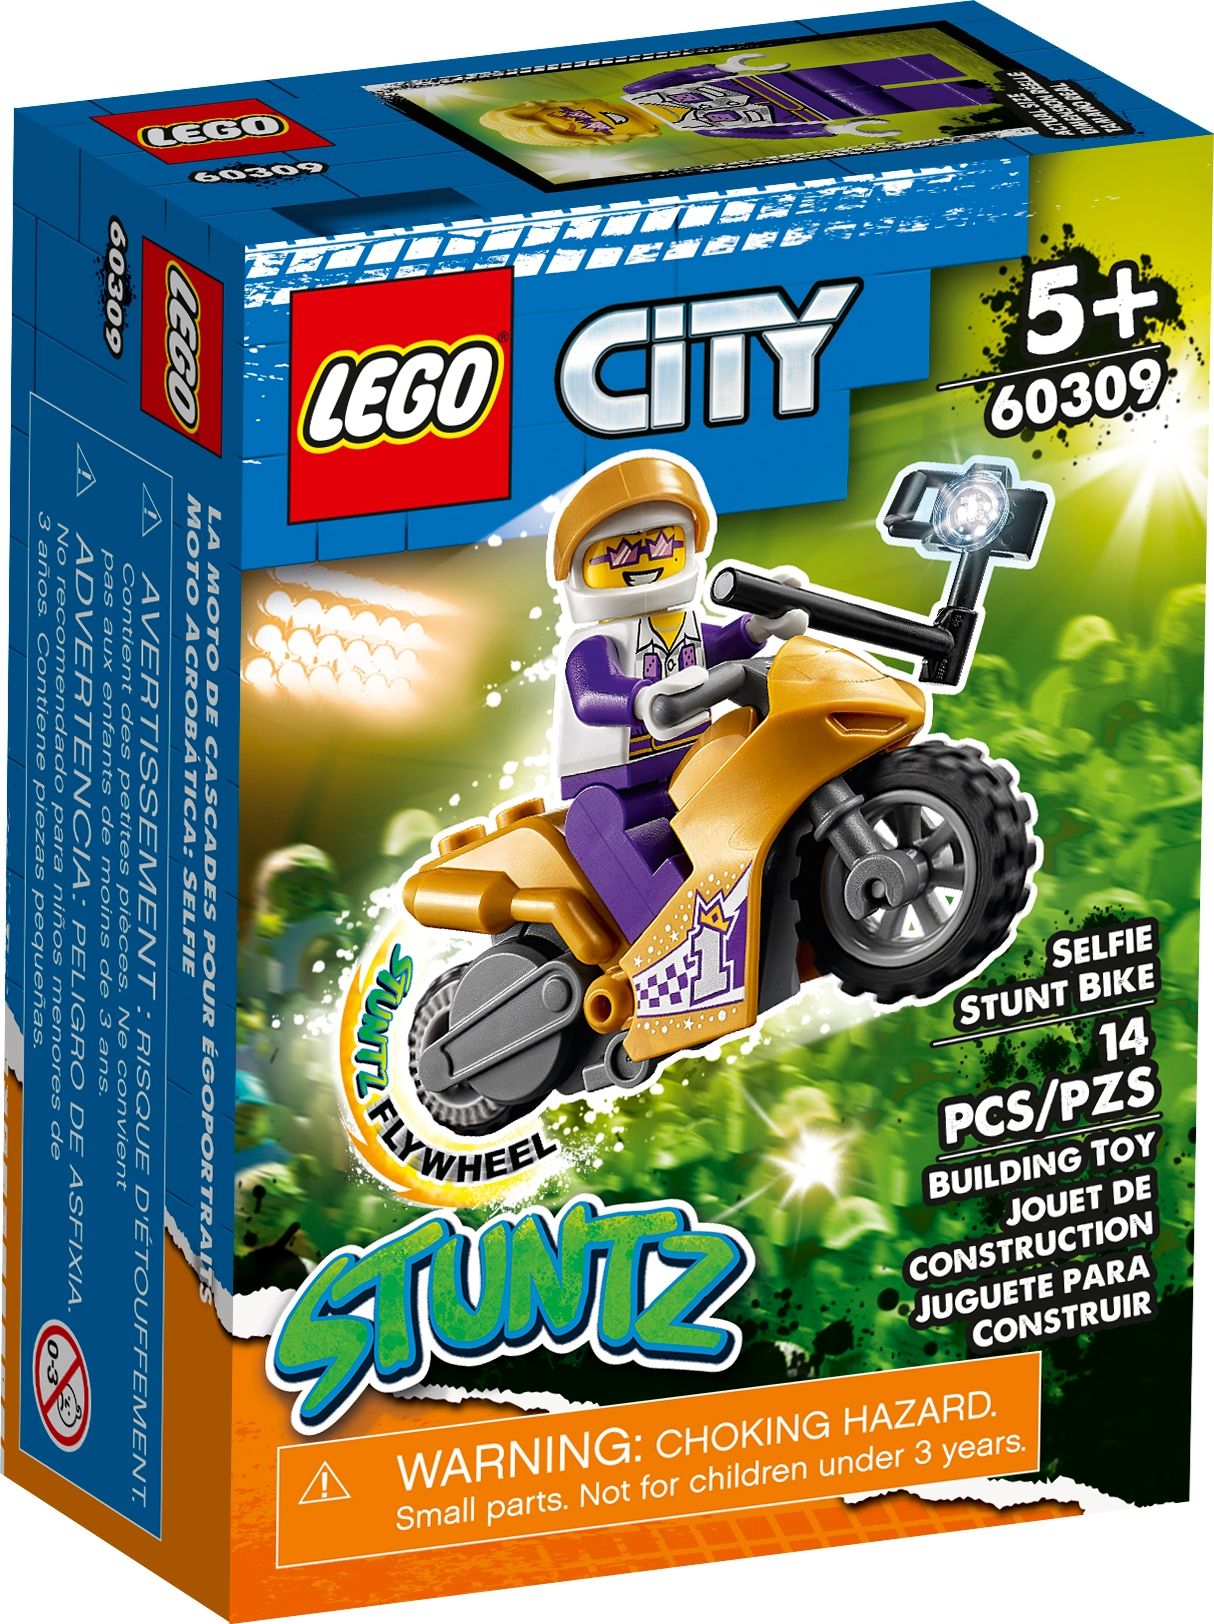 LEGO City 60309 Selfie-Stuntbike LEGO_60309_box1_v39.jpg